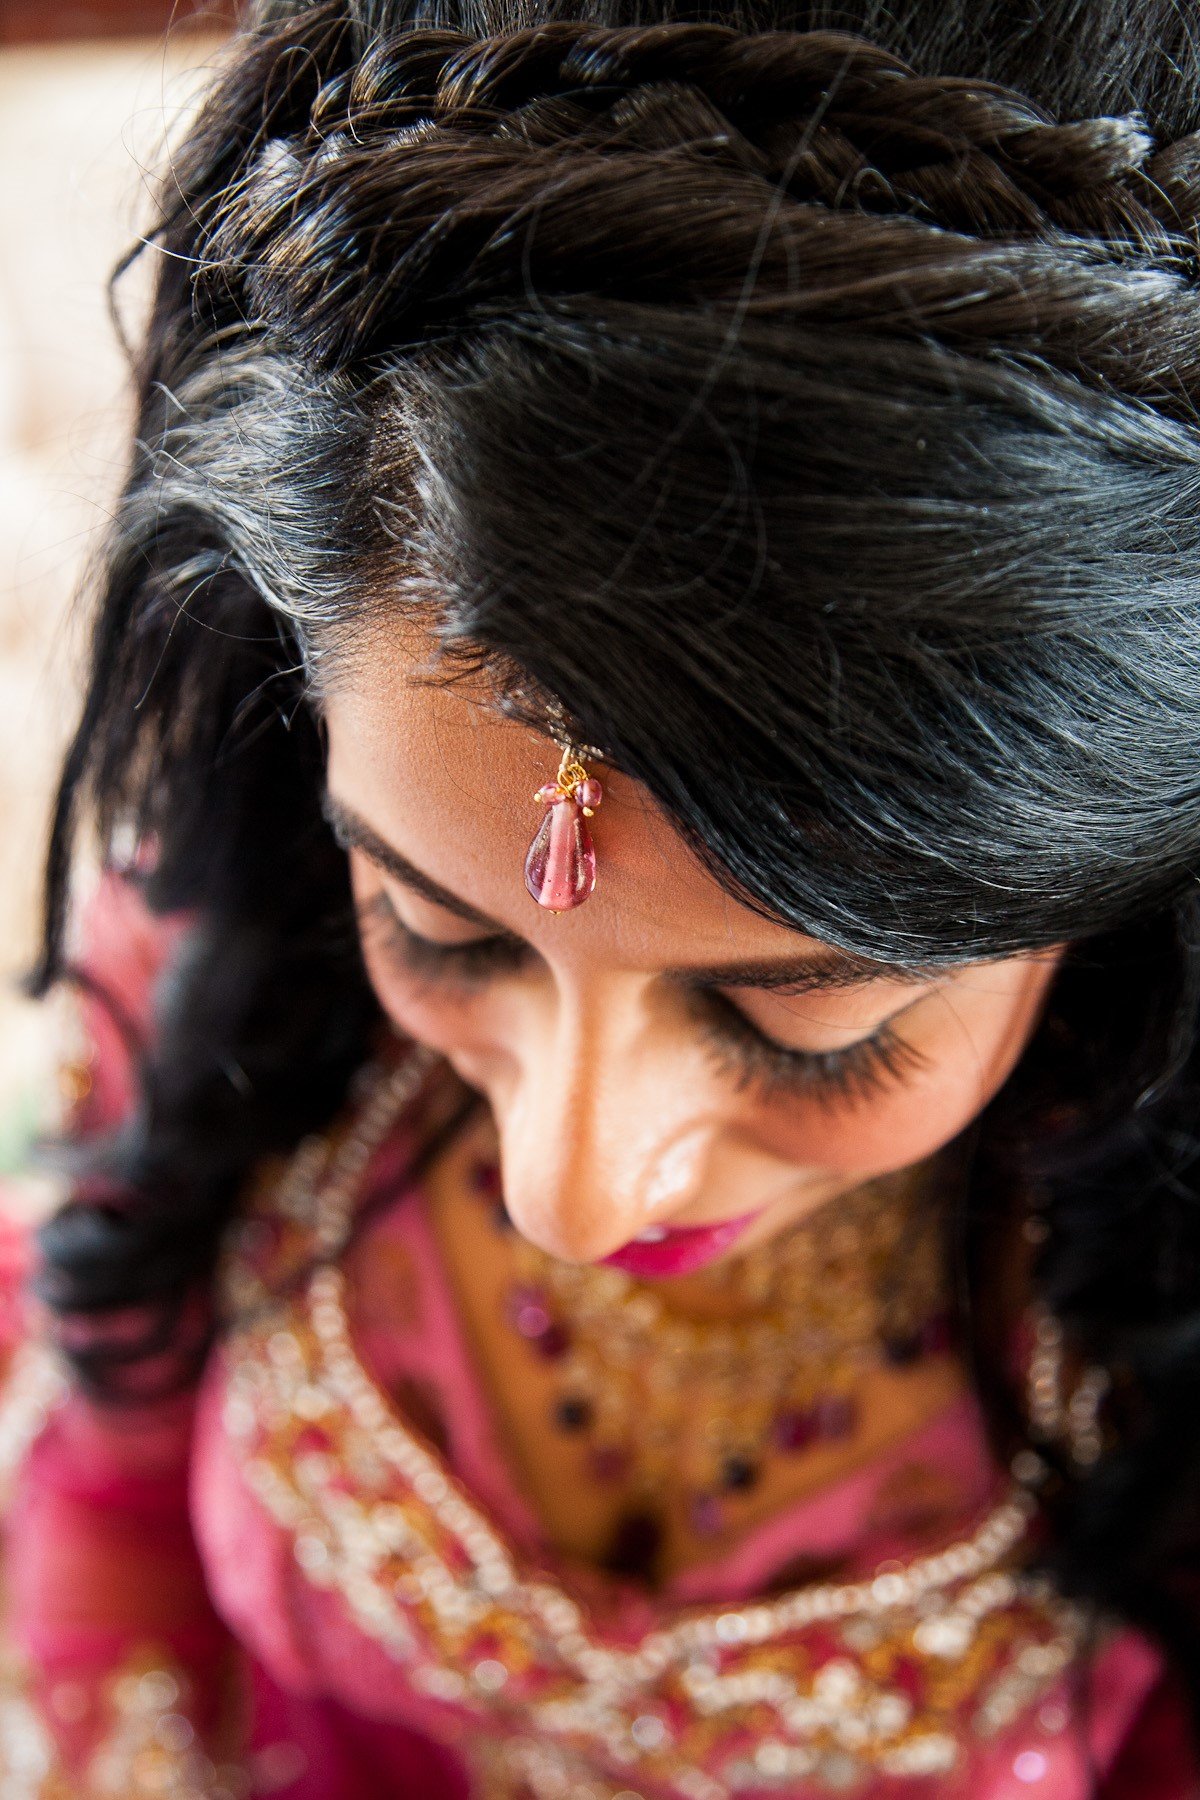 Portrait Middle Eastern Muslim Woman Turban Stock Photo 1197931042 |  Shutterstock